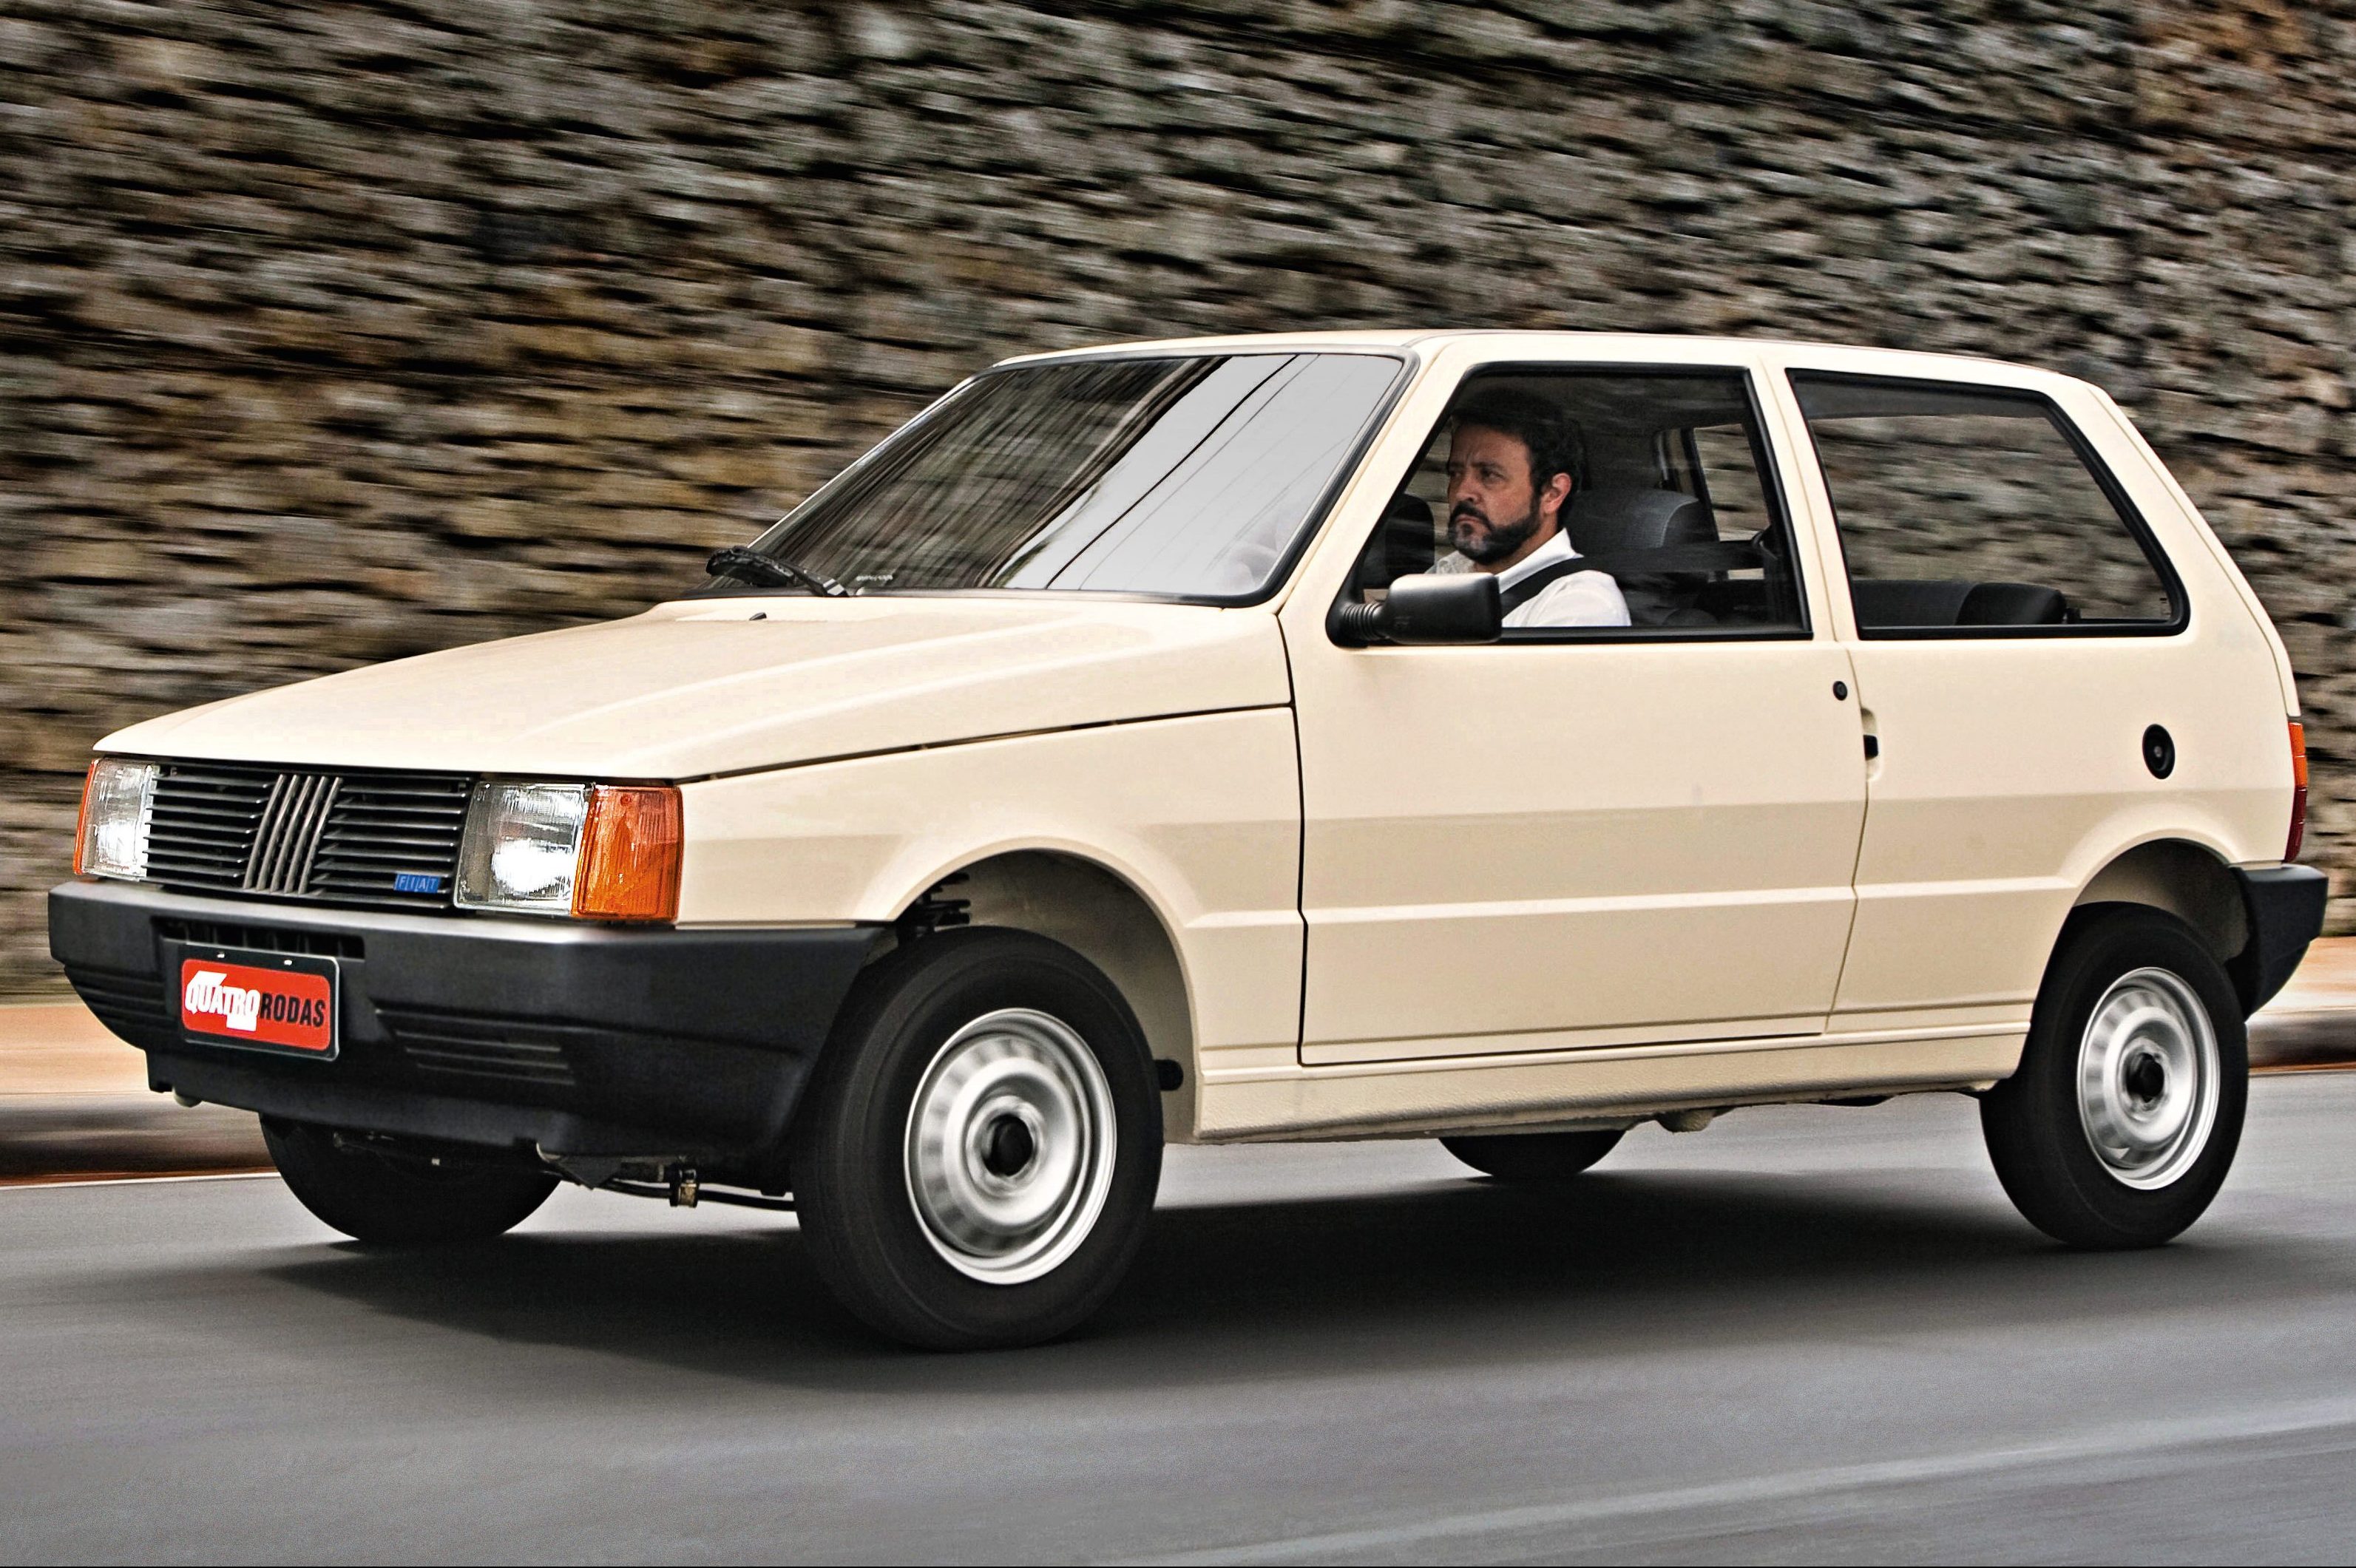 Adeus ao Fiat Uno: relembre a história do carro - Balconista